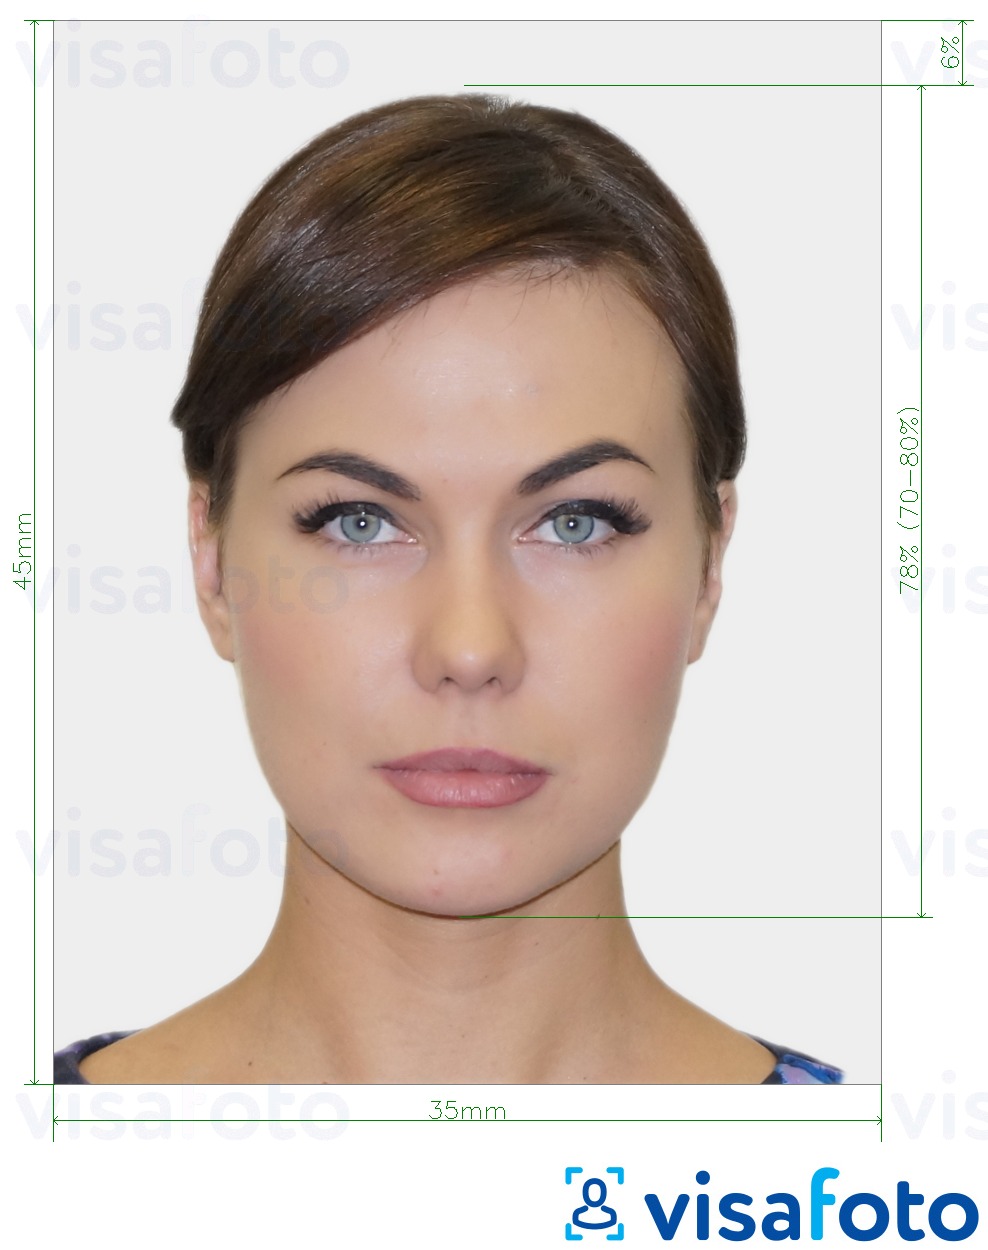 Contoh foto untuk Foto pasport biometrik dengan spesifikasi saiz yang tepat.